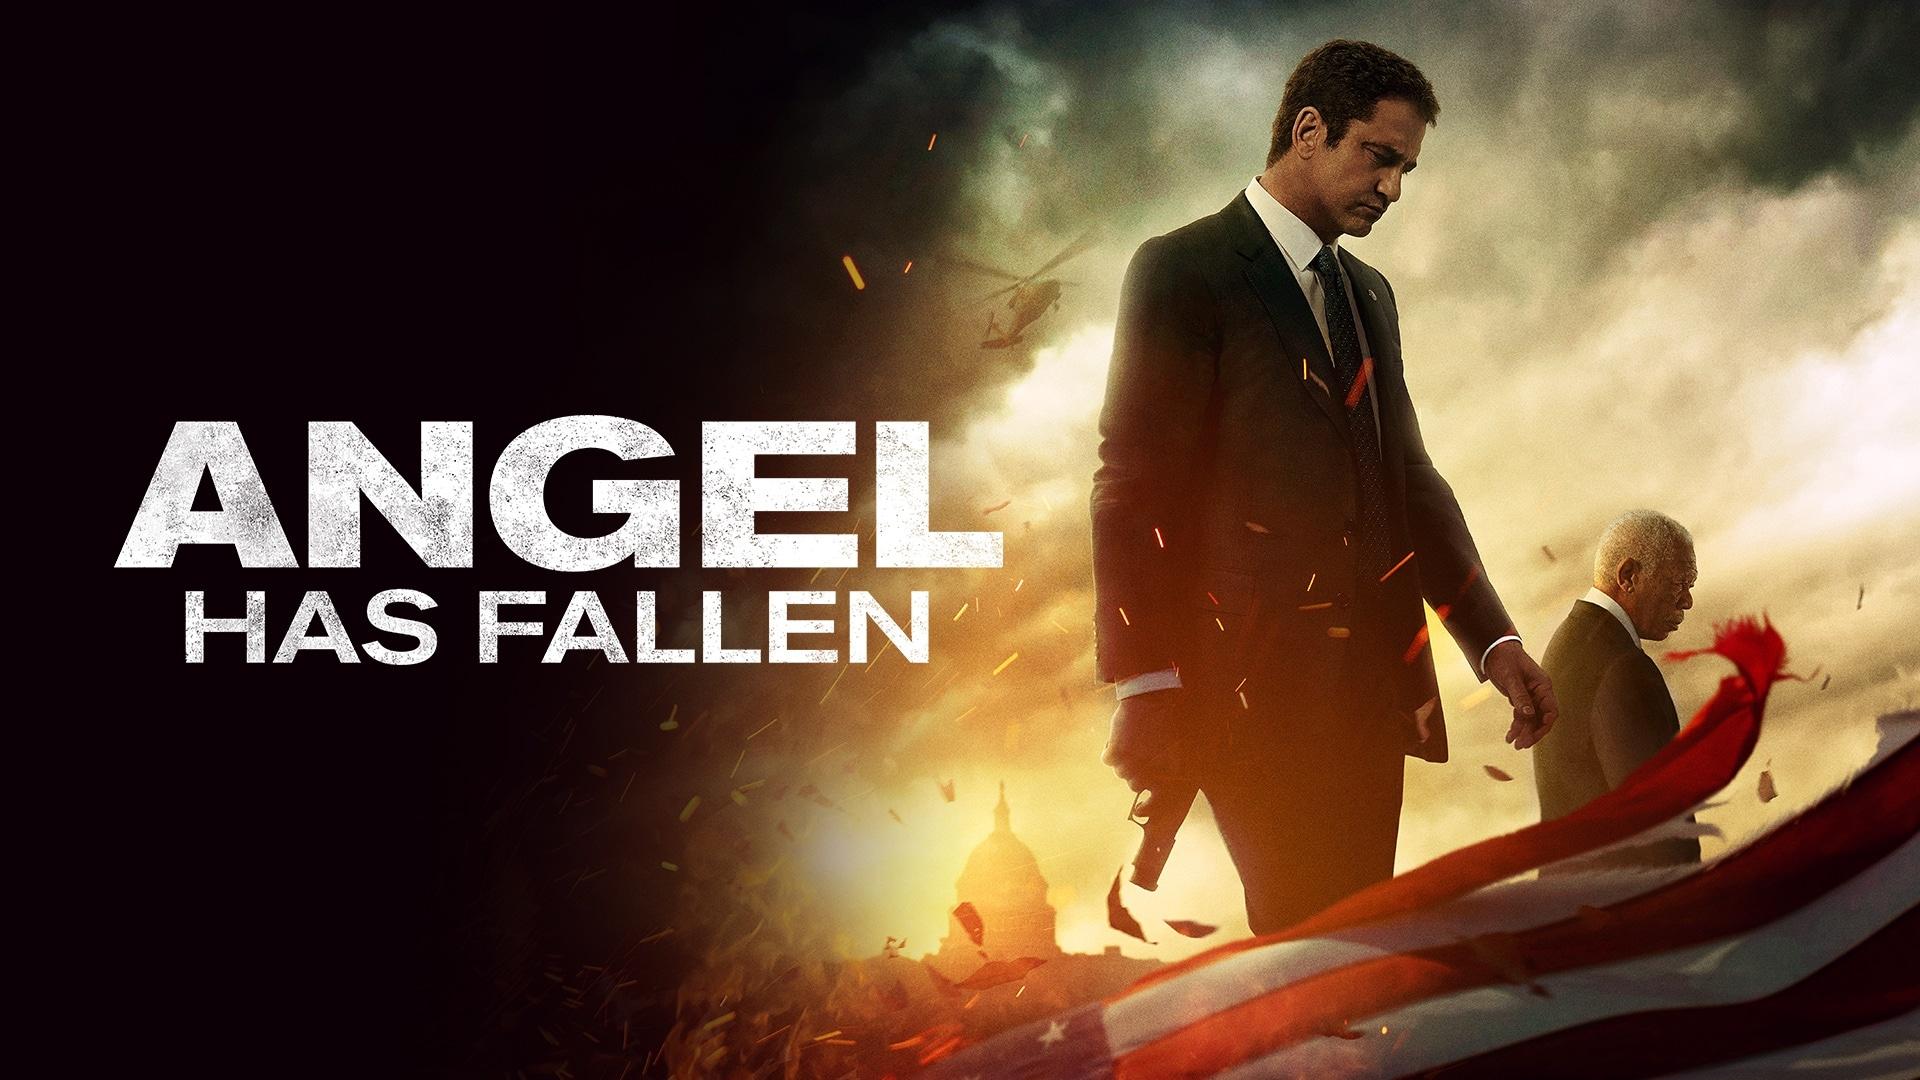 Angel Has Fallen (2019) Review – Decent Action, Poor Story